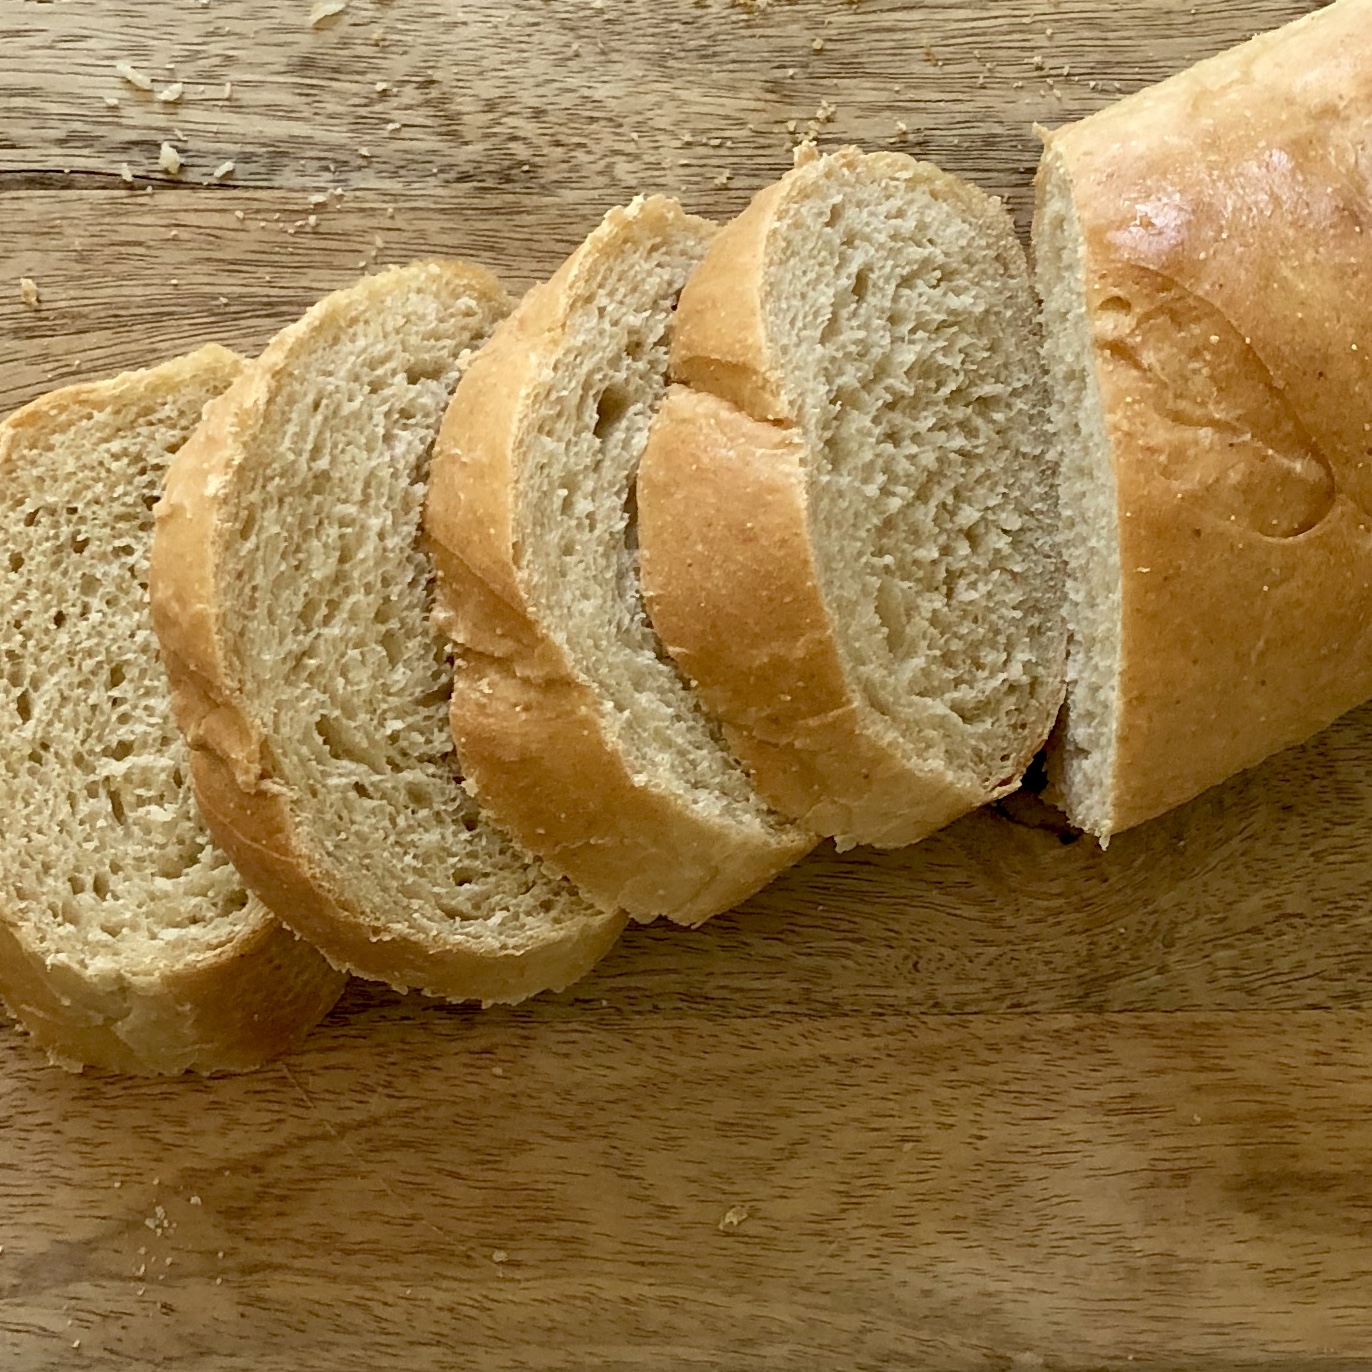 Beginner's Bread-Making Set